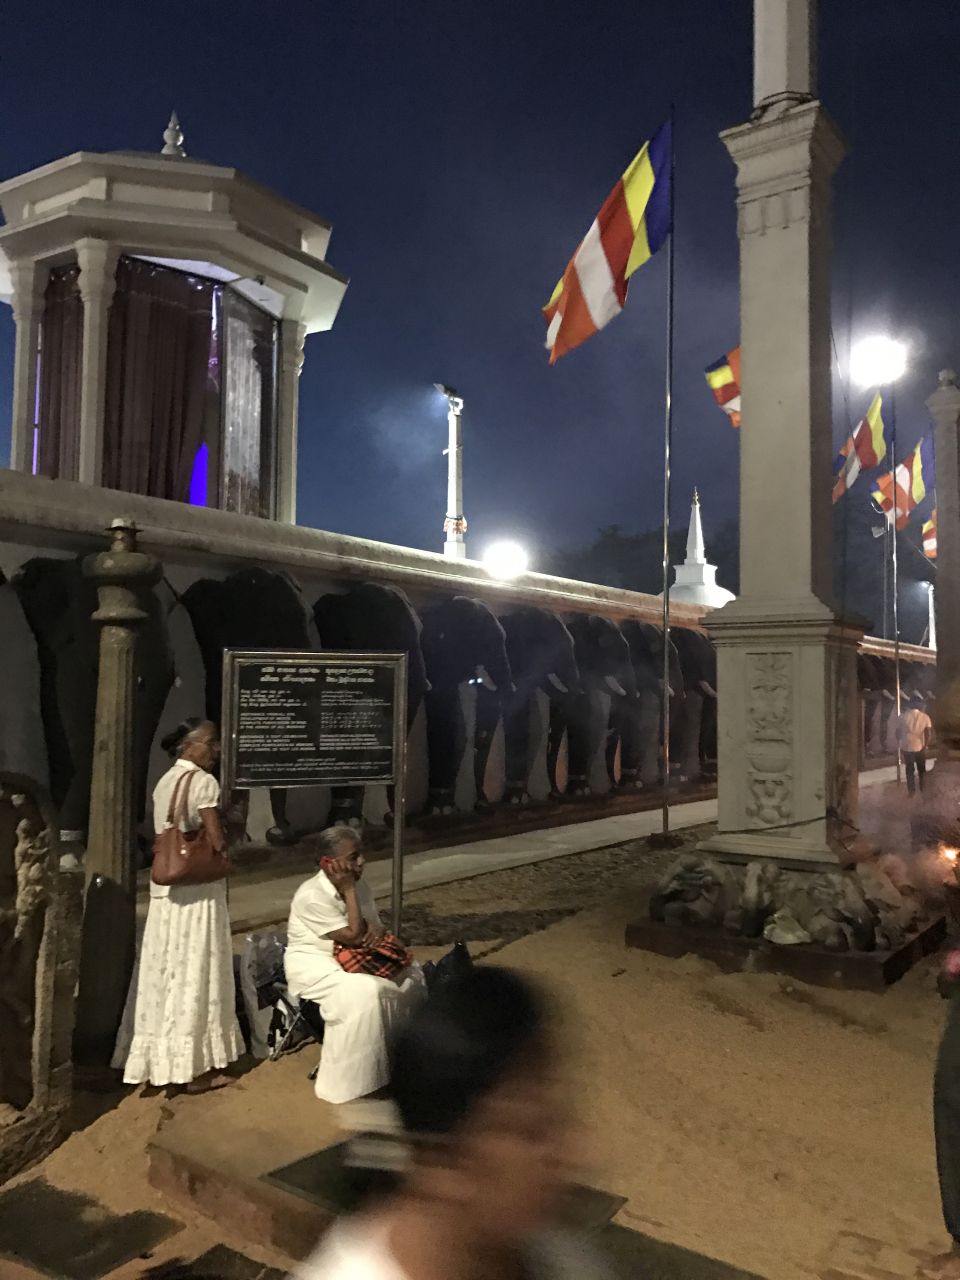 вокруг всего храмвого комплекса барельефы сотен слонов - Шри-Ланка 2017. Часть 2.